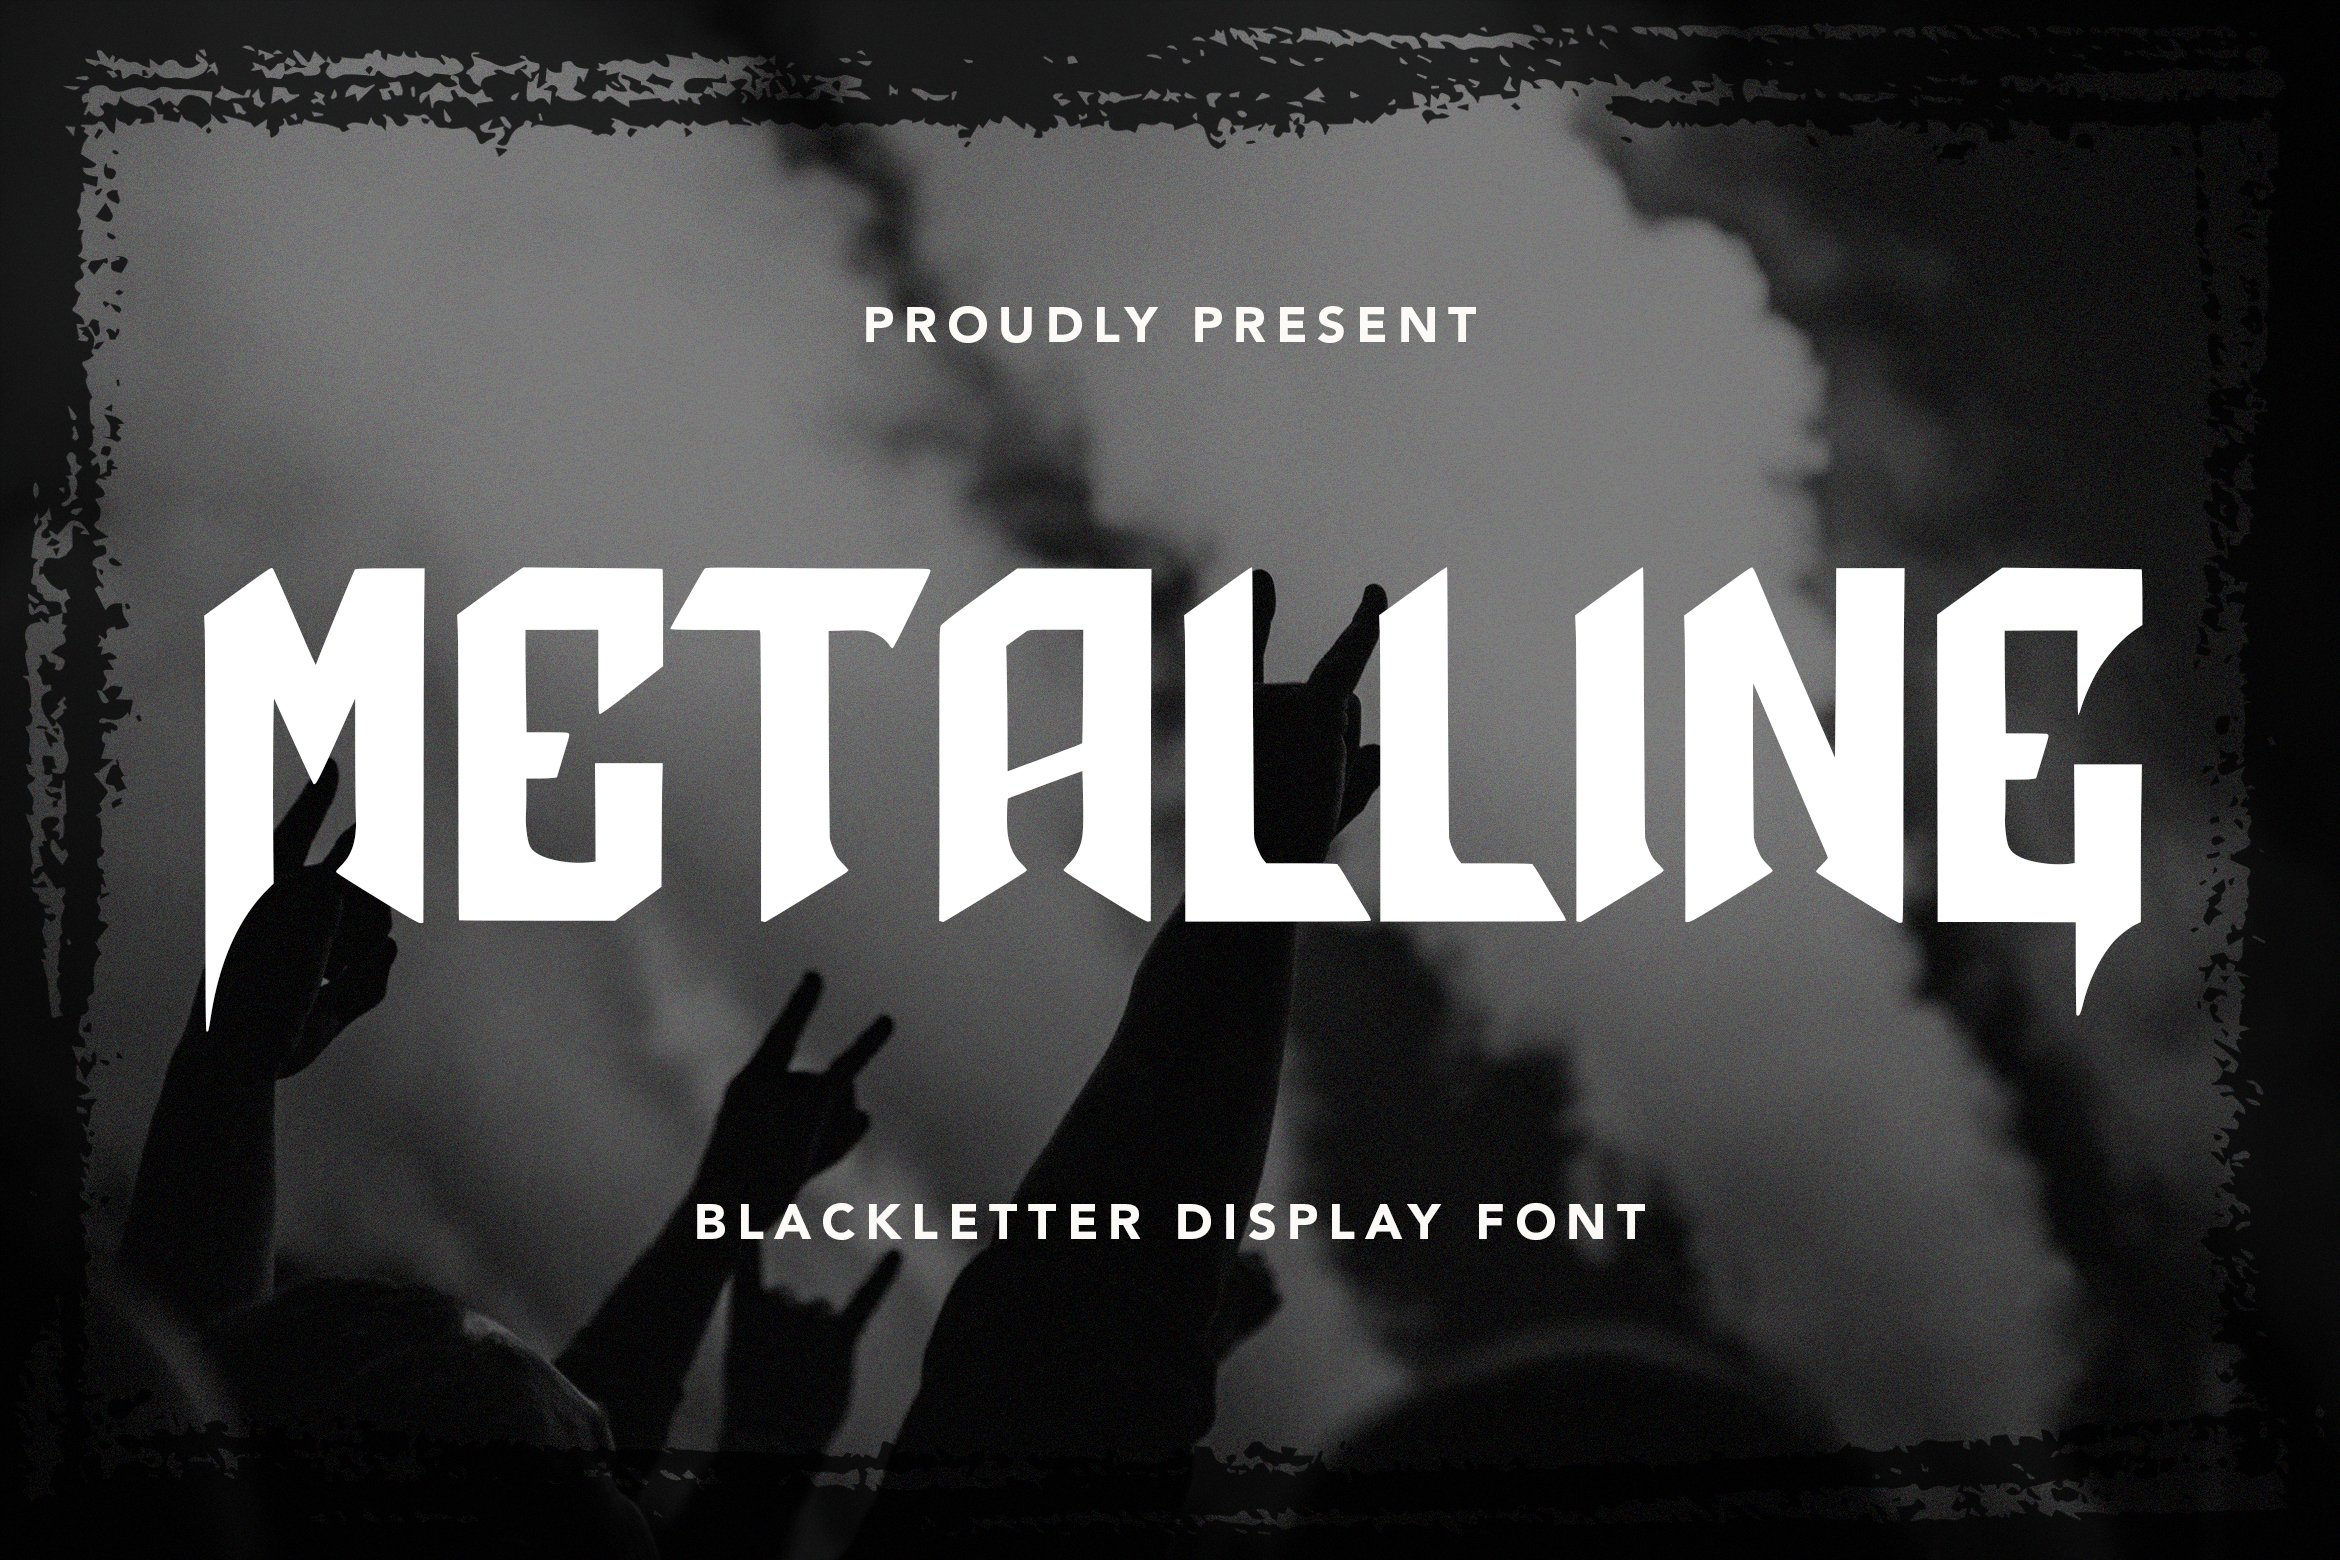 Metalline - Blackletter Display Font cover image.